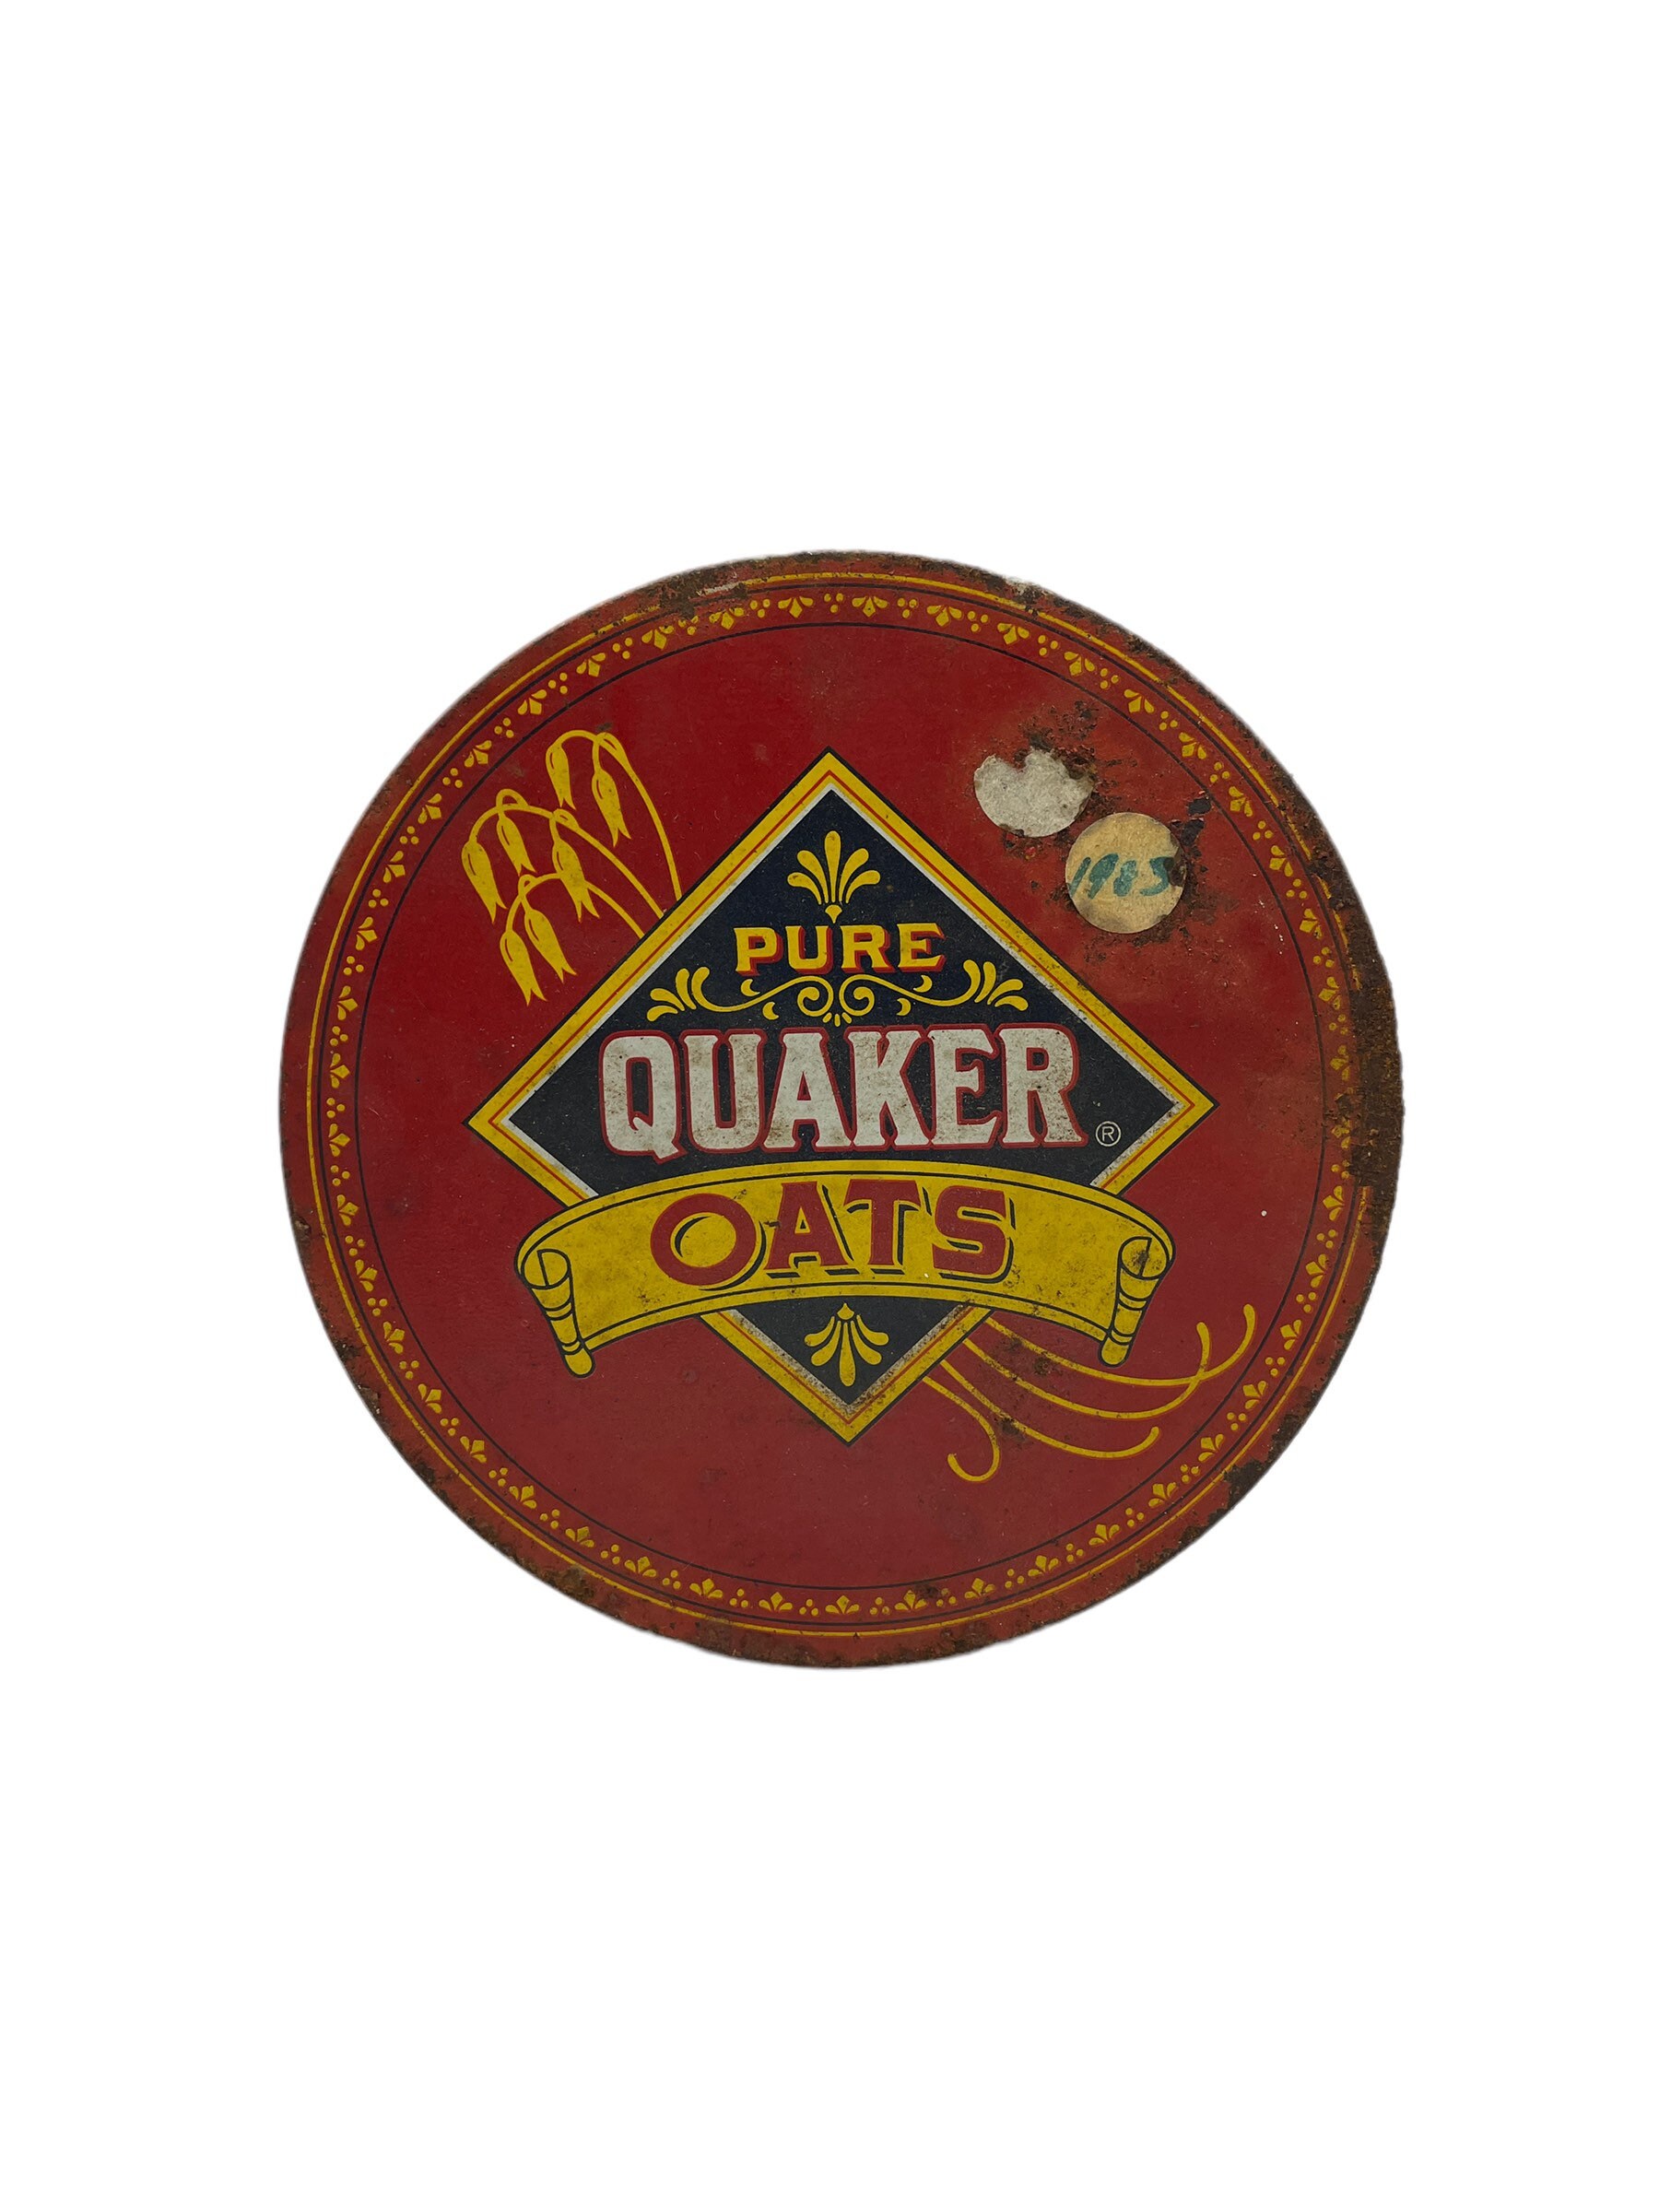 PRICE LOWERED RARE ORIGINAL 1896 Quaker Oats Container Like Cracker Barrel  Decor